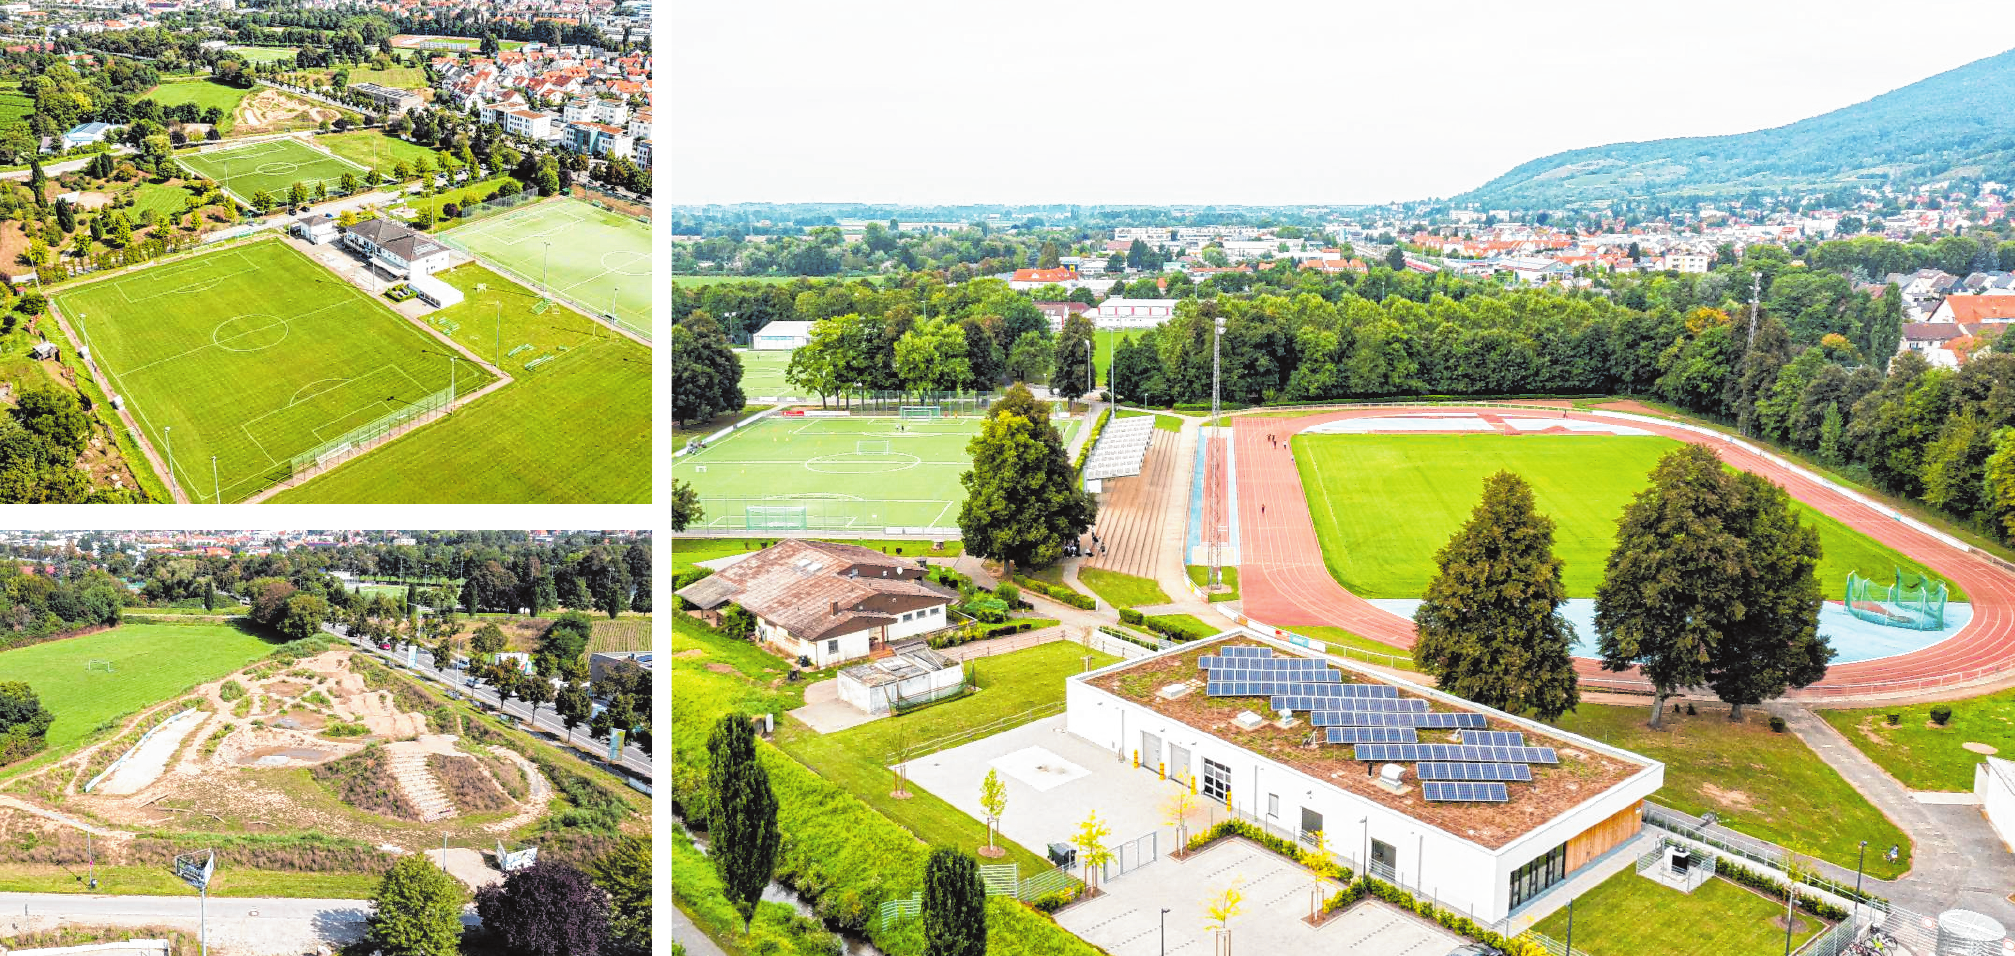 Einige der Sportstätten am Berliner Ring aus der Luft gesehen: Sportpark West (links oben), Bikepark und Weiherhausstadion (rechts). Bilder: Showmaker